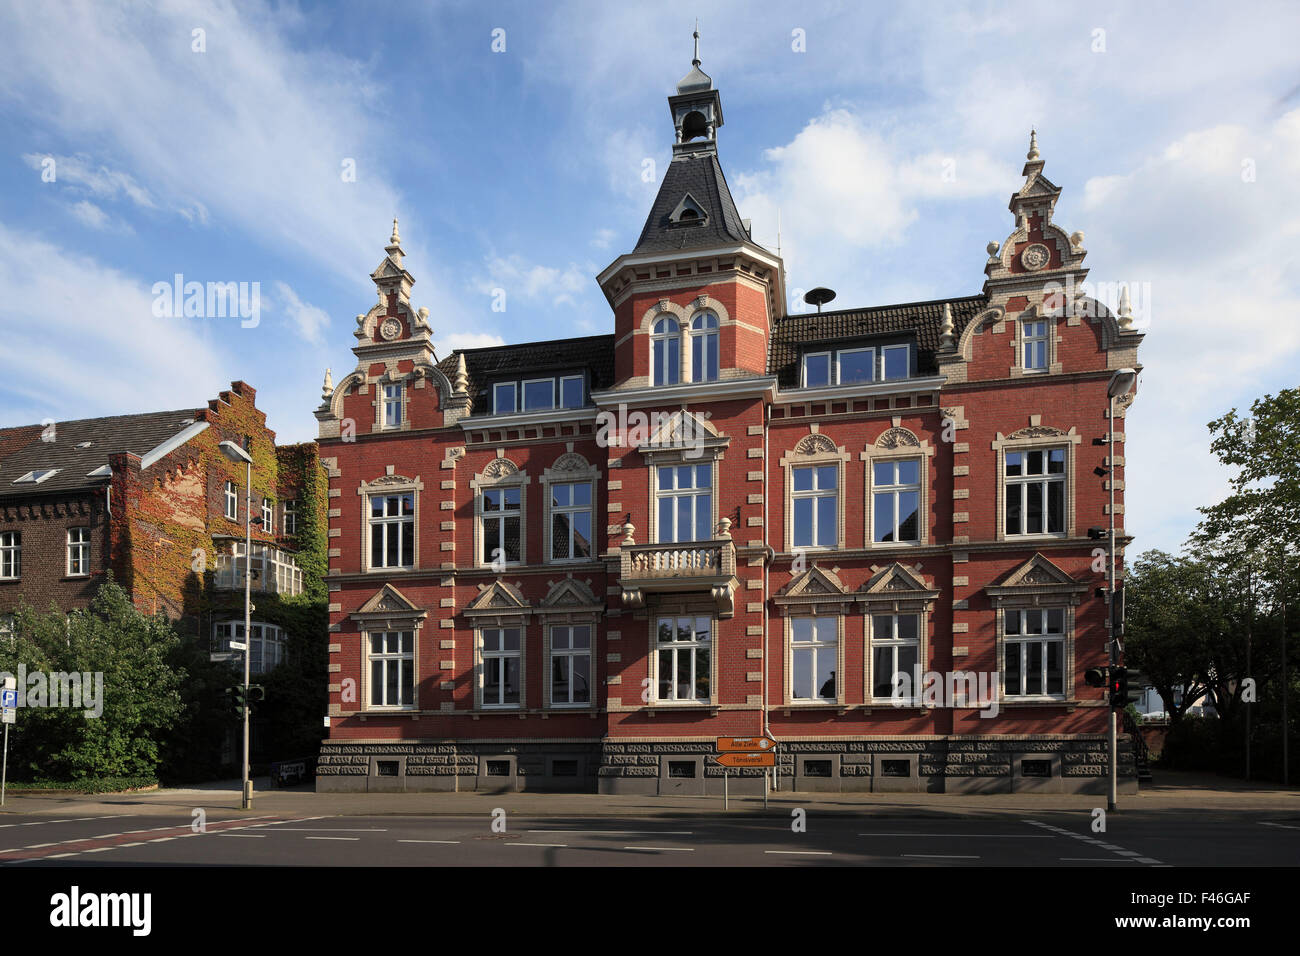 Ehemaliges Rathaus an der Toenisvorster Viersen-Suechteln Strasse, Niederrhein, Nordrhein-Westfalen Banque D'Images